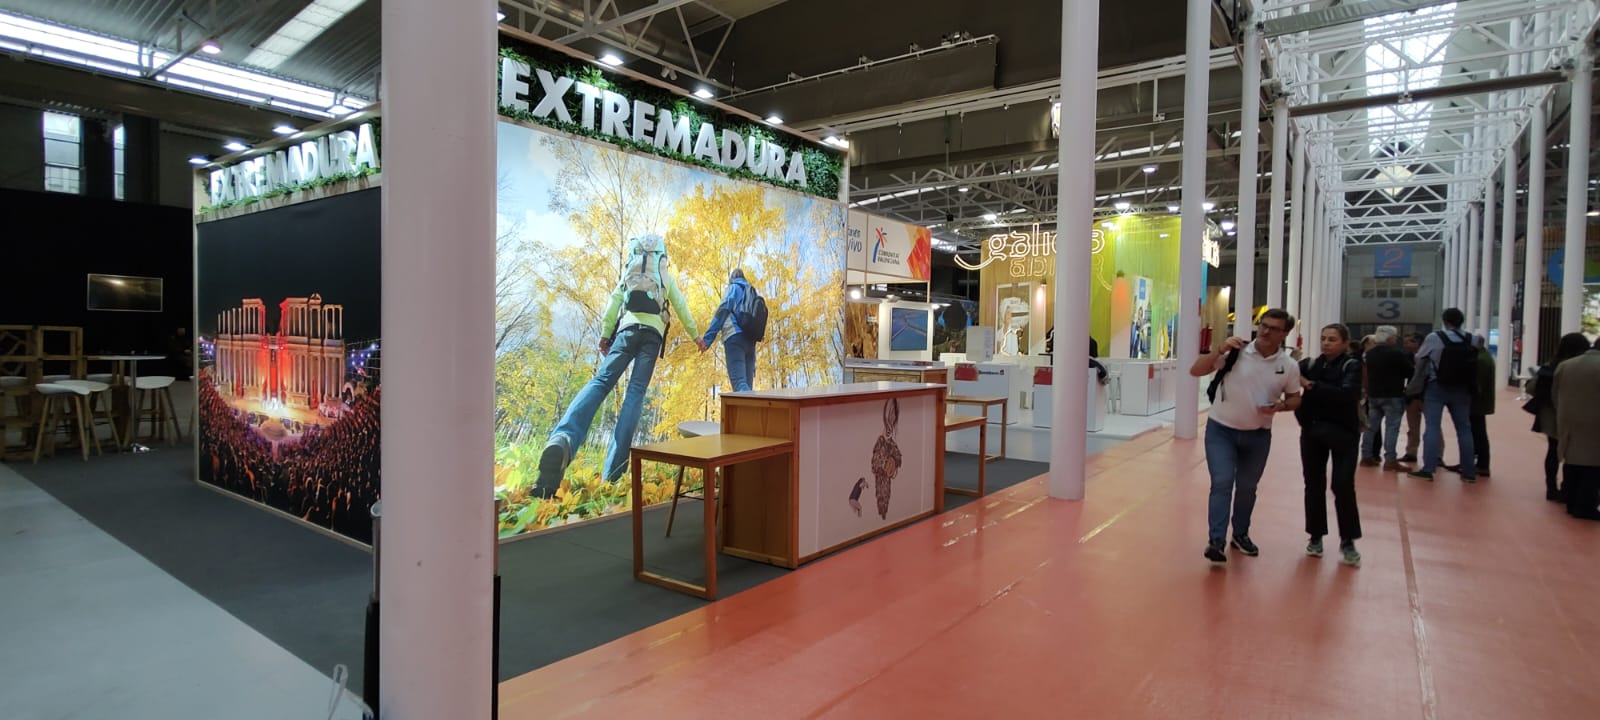 Image 2 of article Extremadura impulsa la promoción turística en la Feria Internacional de Turismo de Interior de Valladolid